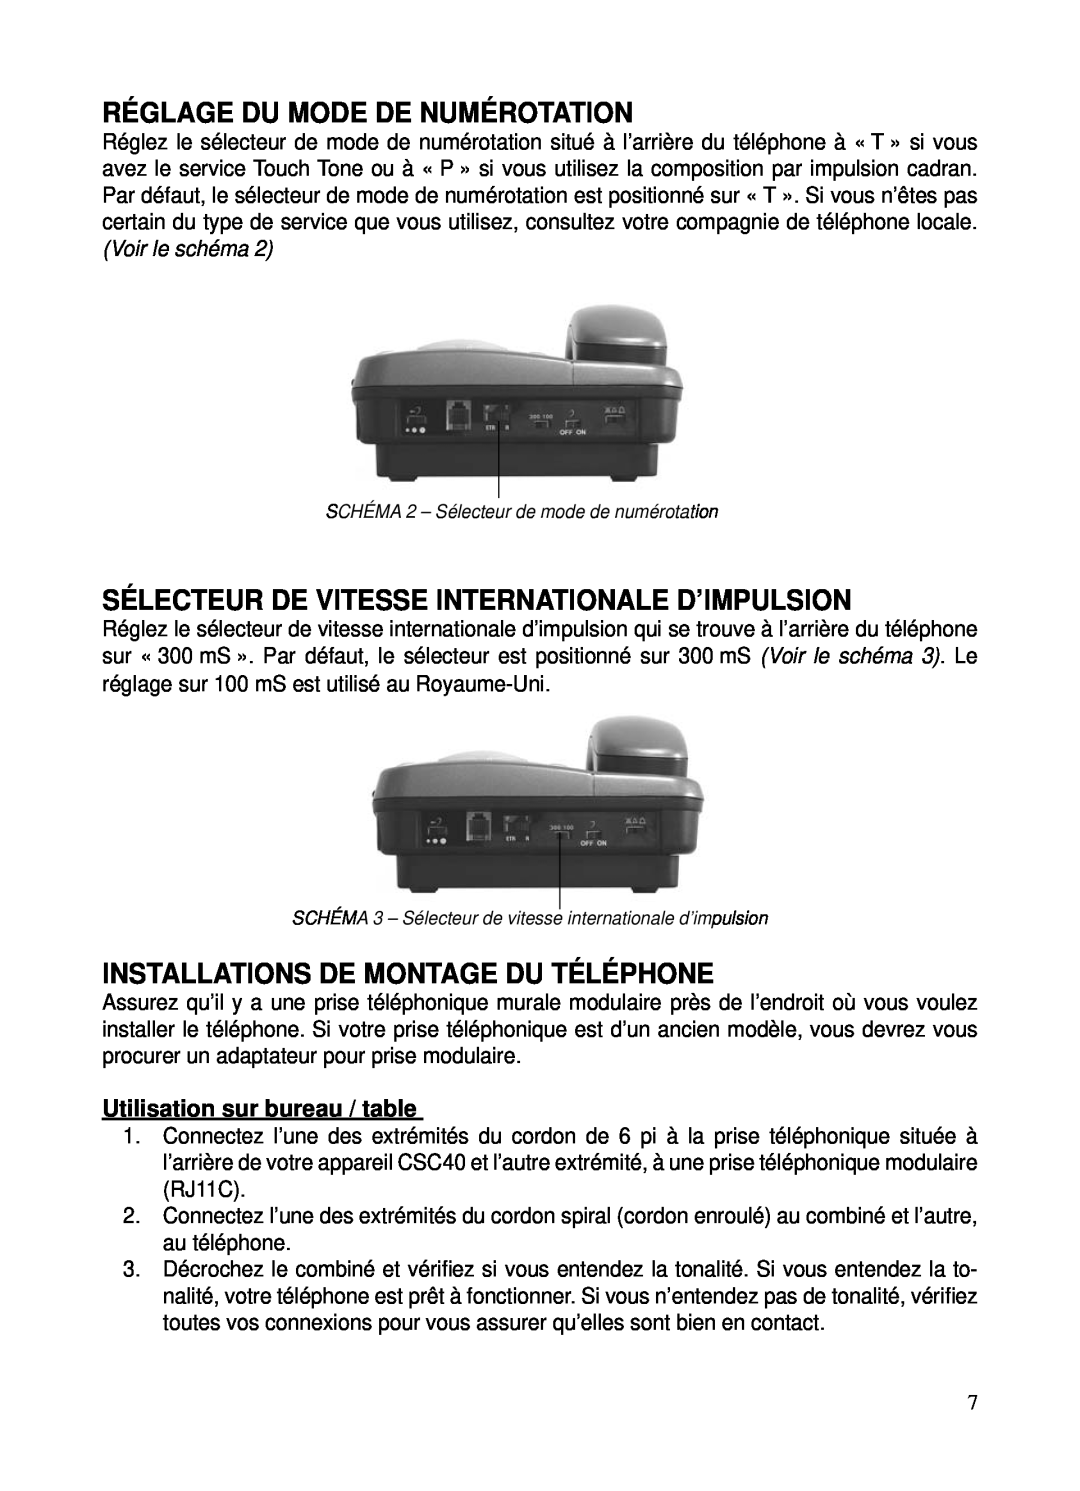 ClearSounds CSC40 user manual Réglage Du Mode De Numérotation, Sélecteur De Vitesse Internationale D’Impulsion 